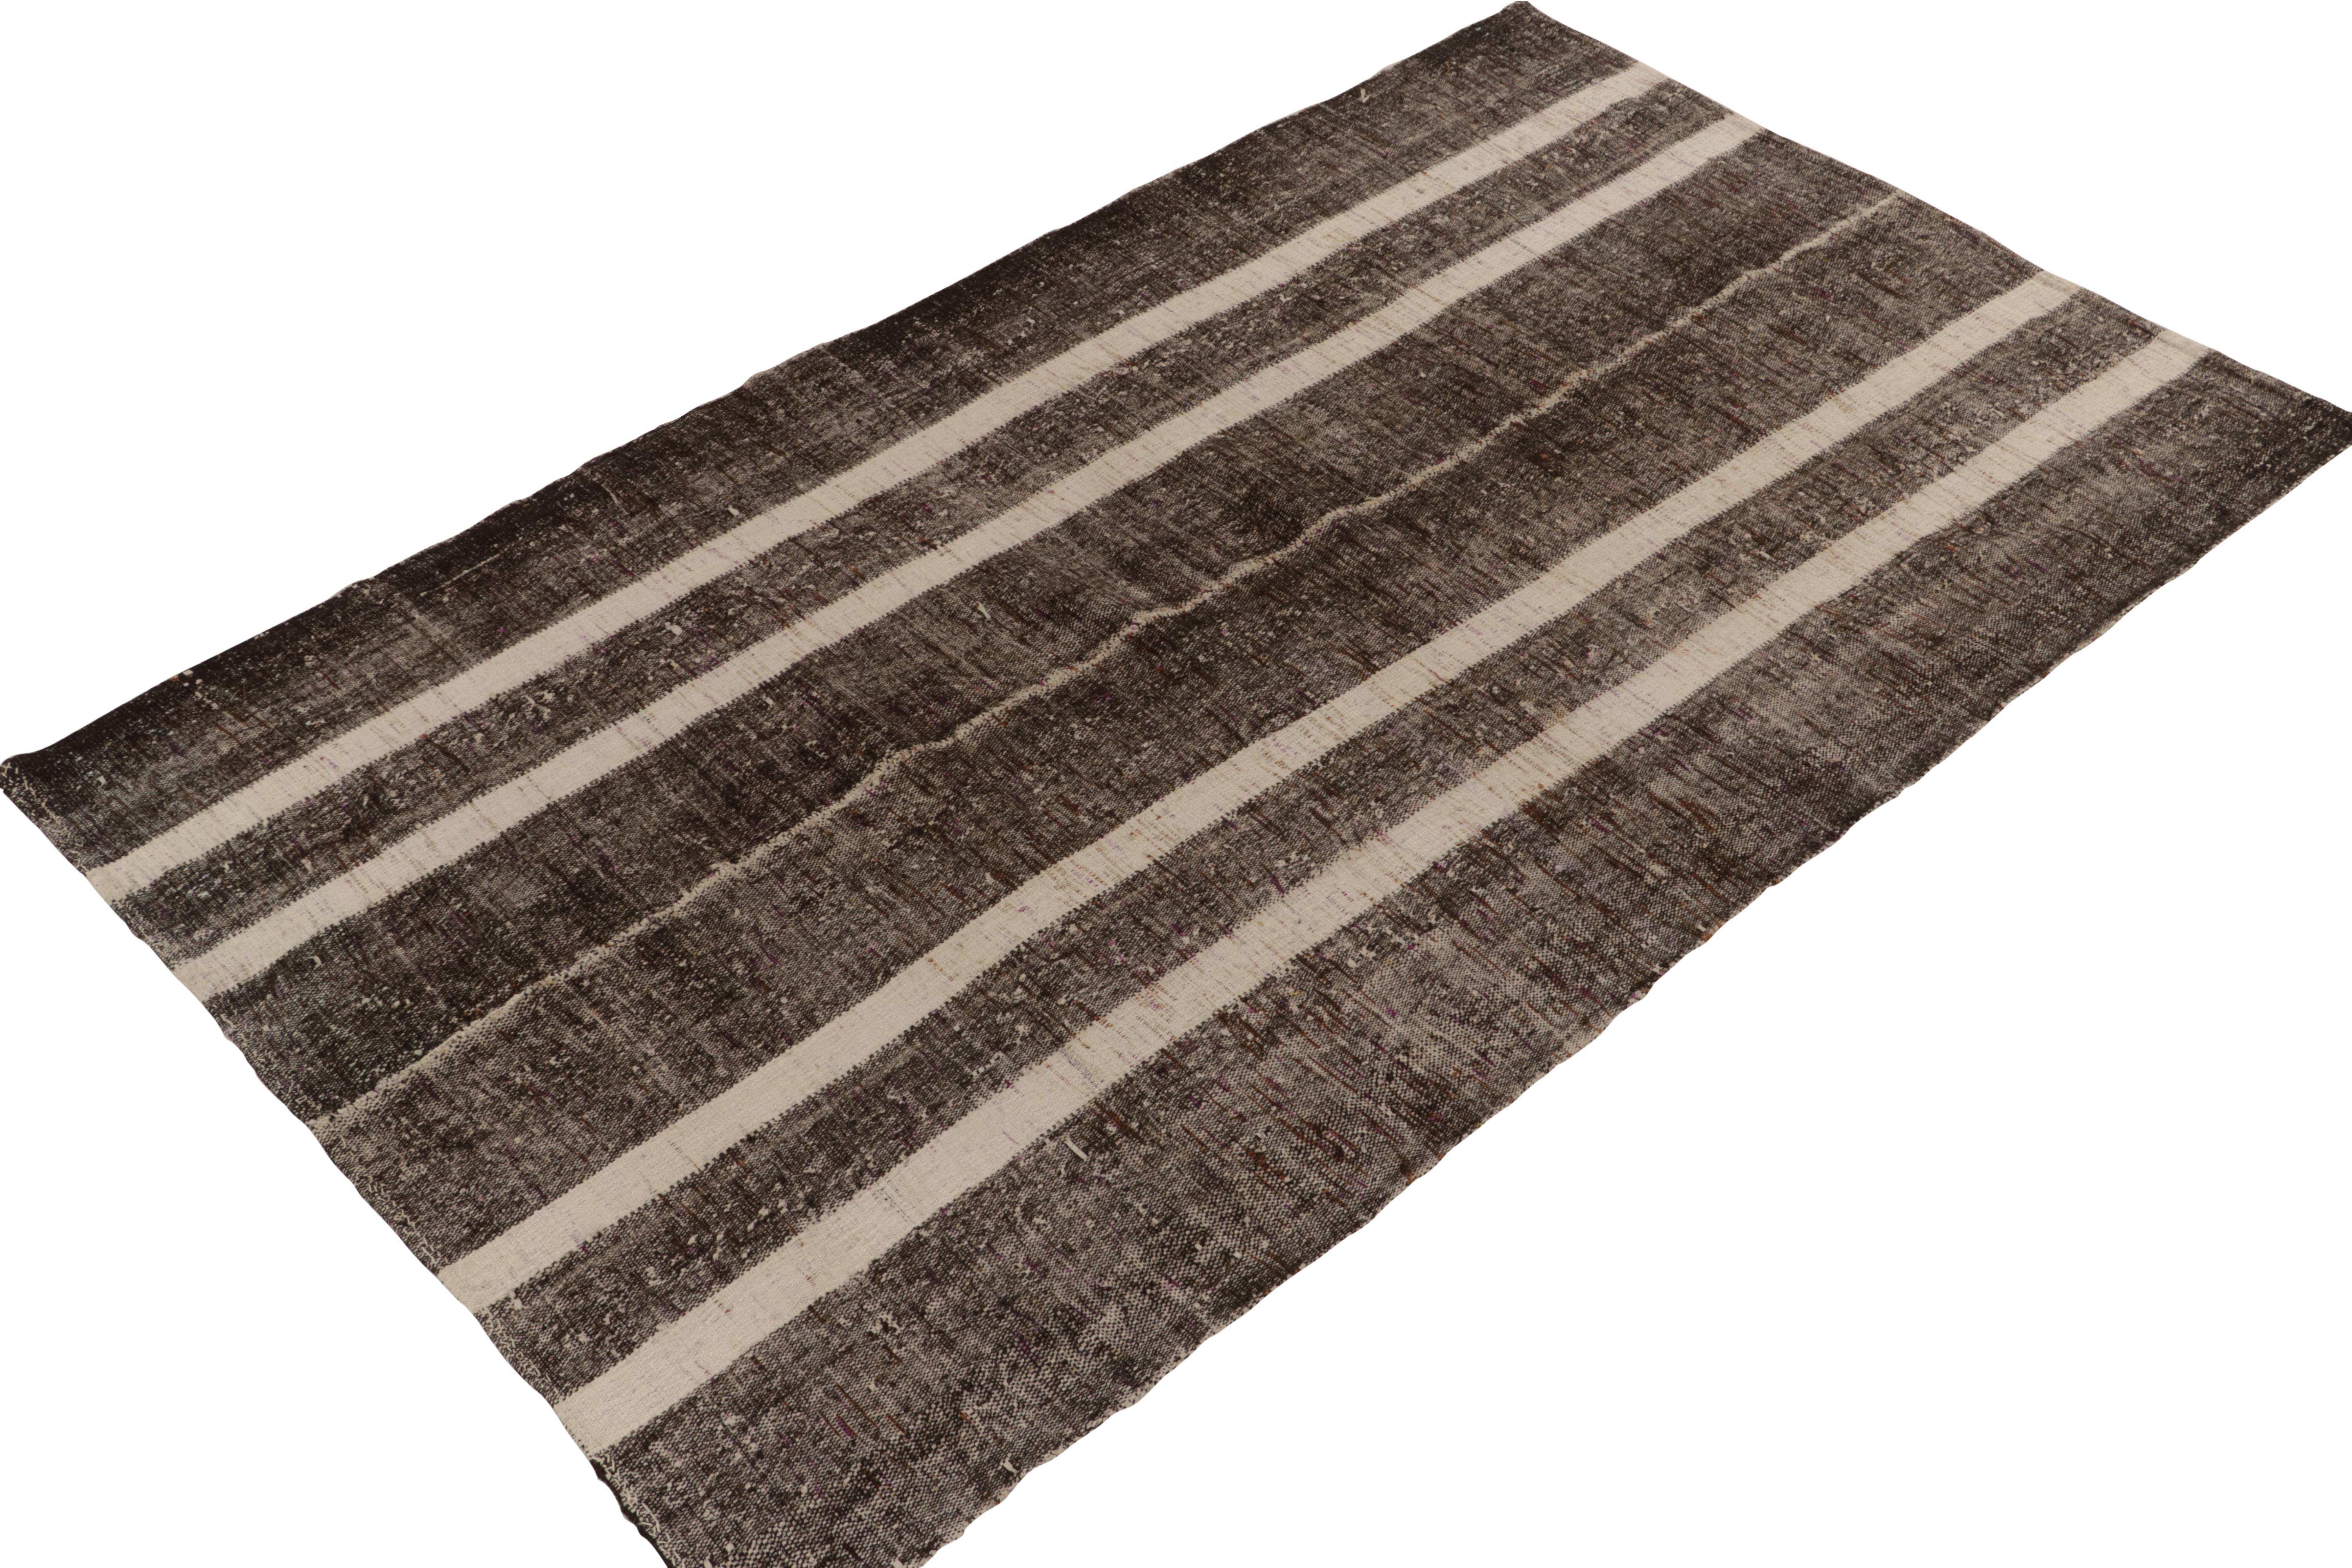 Originaire de 1950-1960, un tapis kilim vintage 6x10 de Turquie. Tissé à la main en laine avec la technique du tissage à panneaux, le design simple bénéficie d'un jeu neutre de beige-brun avec un élément blanc et noir salé dans les stries. Une